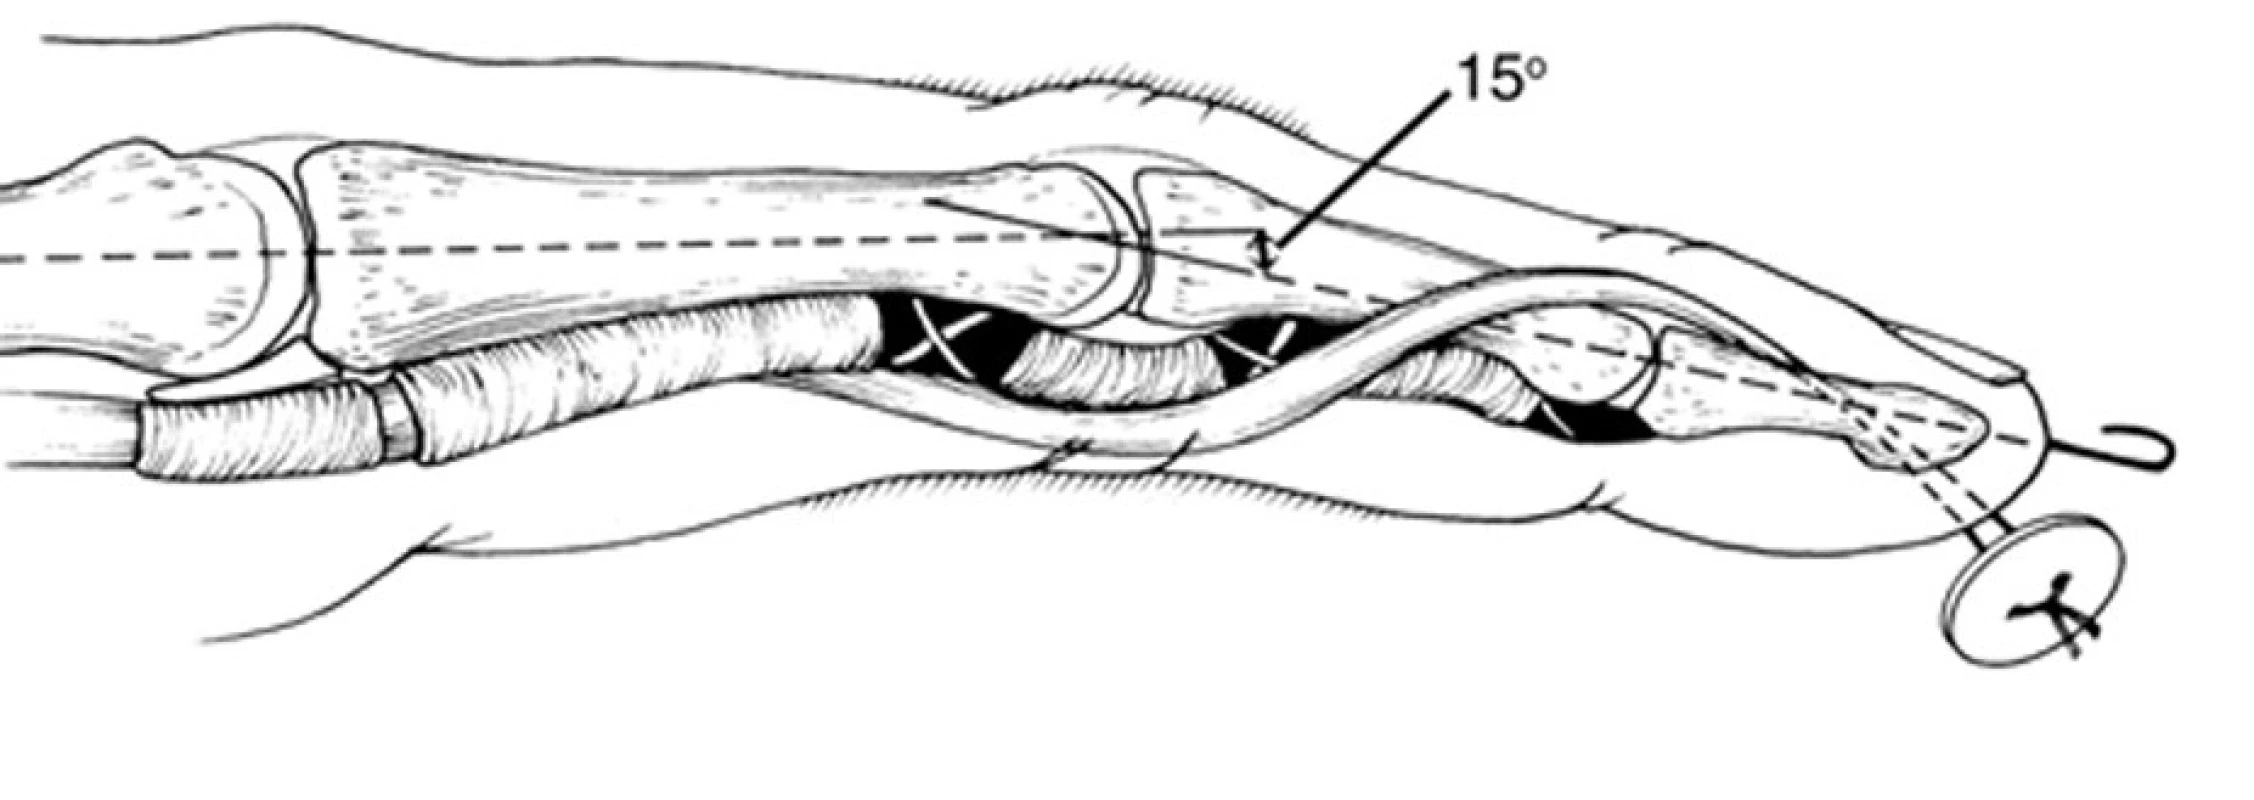 Rekonštrukcia ORL šľachovým transplantátom 
Koniec transplantátu sa prišije na terminálny extenzor, vedie sa medzi flexorovou šľachou a volárnou platničkou PIP kĺba, prevedie sa diafýzou proximálneho článku a zafixuje sa na opačnej strane na koži cez gombík [11].
Fig. 10: ORL reconstruction with the tendon graft 
One end of the tendon graft if fixed to the terminal extensor. The graft is passed between the flexor tendon and PIP joint volar plate, then through the diaphysis of the proximal phalanx and fixed on the opposite site on the skin through the button [11].